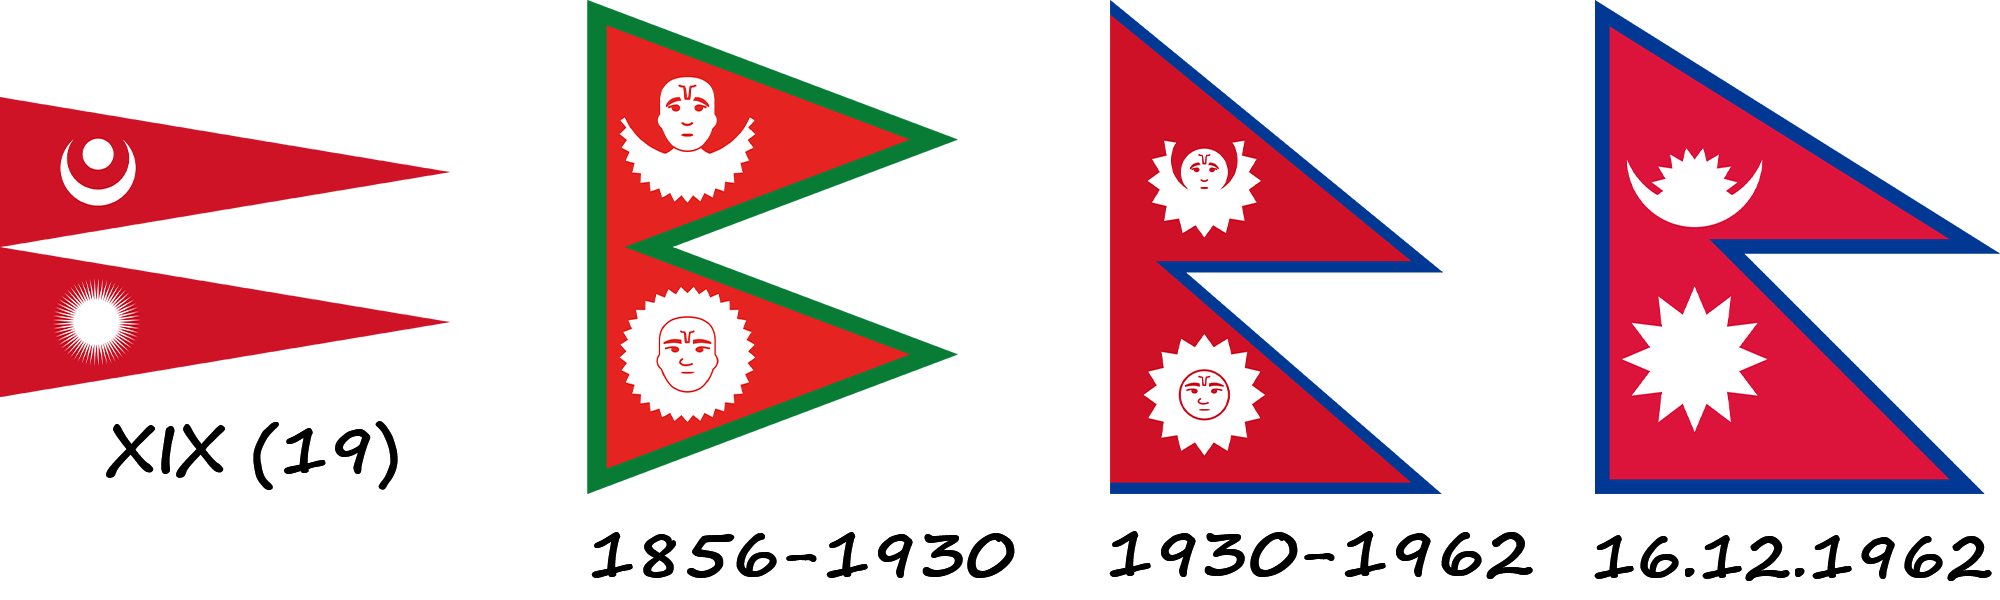 Histoire du drapeau népalais